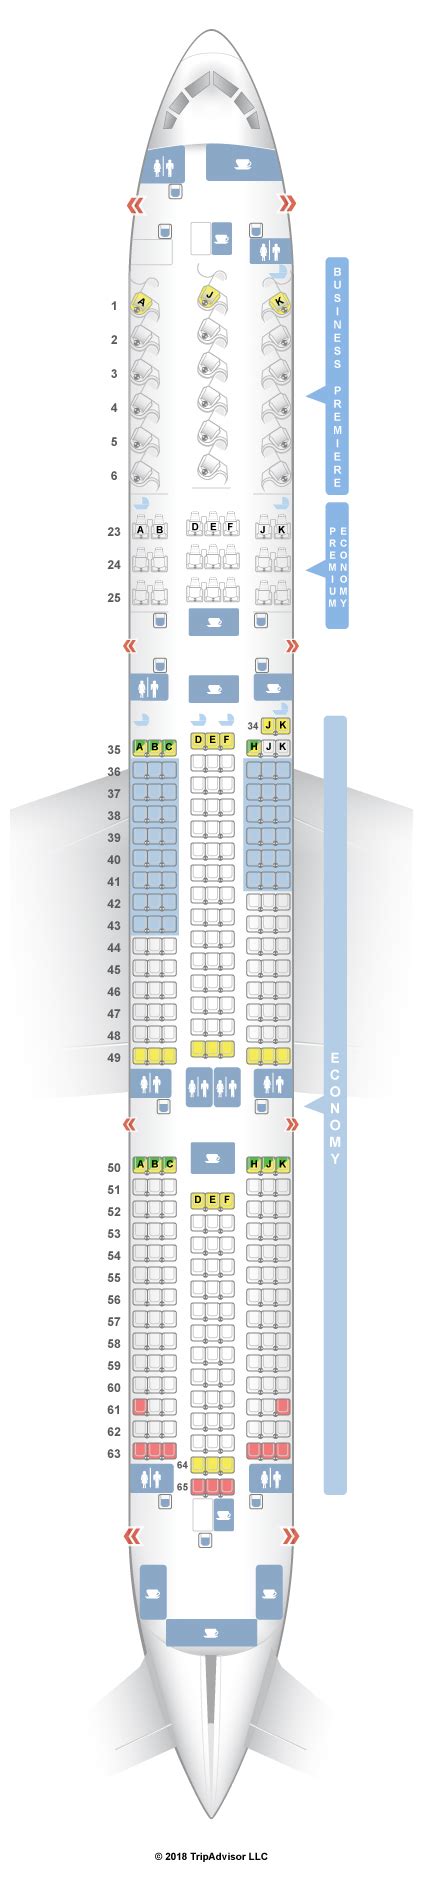 Boeing 787 9 Seat Map Afp Cv